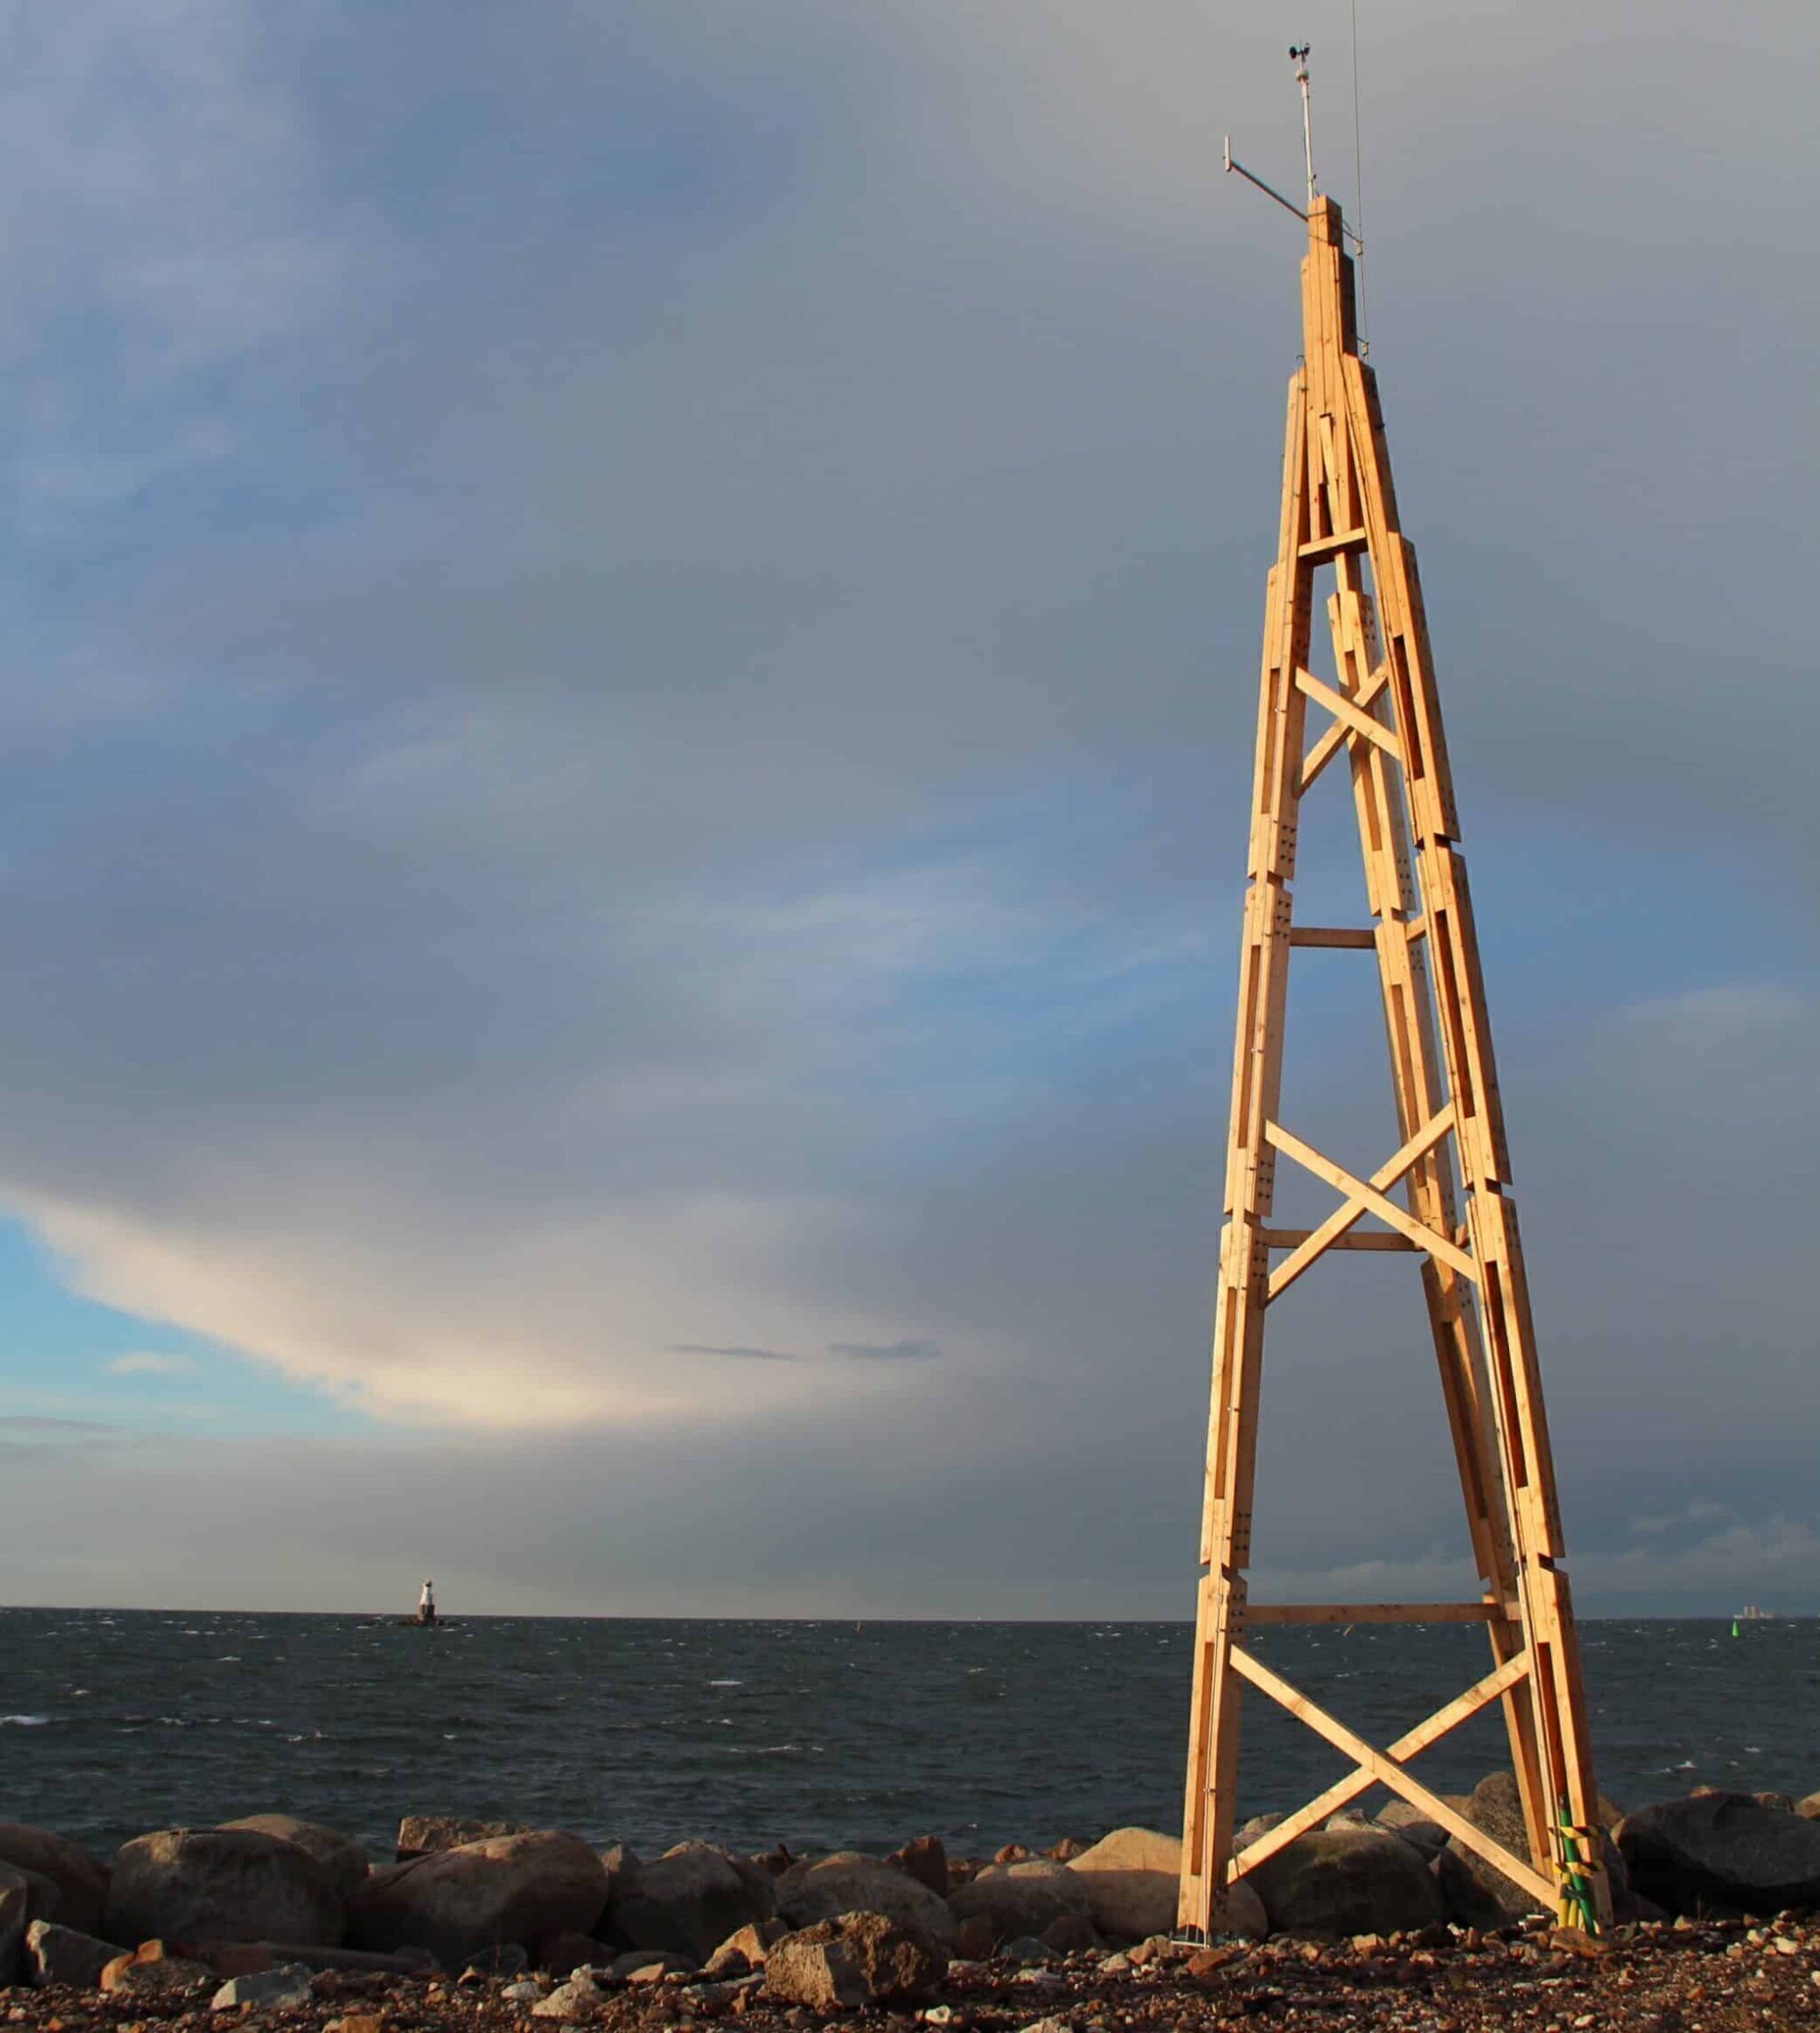 Dali wooden tower for wind turbines installed in Västra Hamnen, Malmö